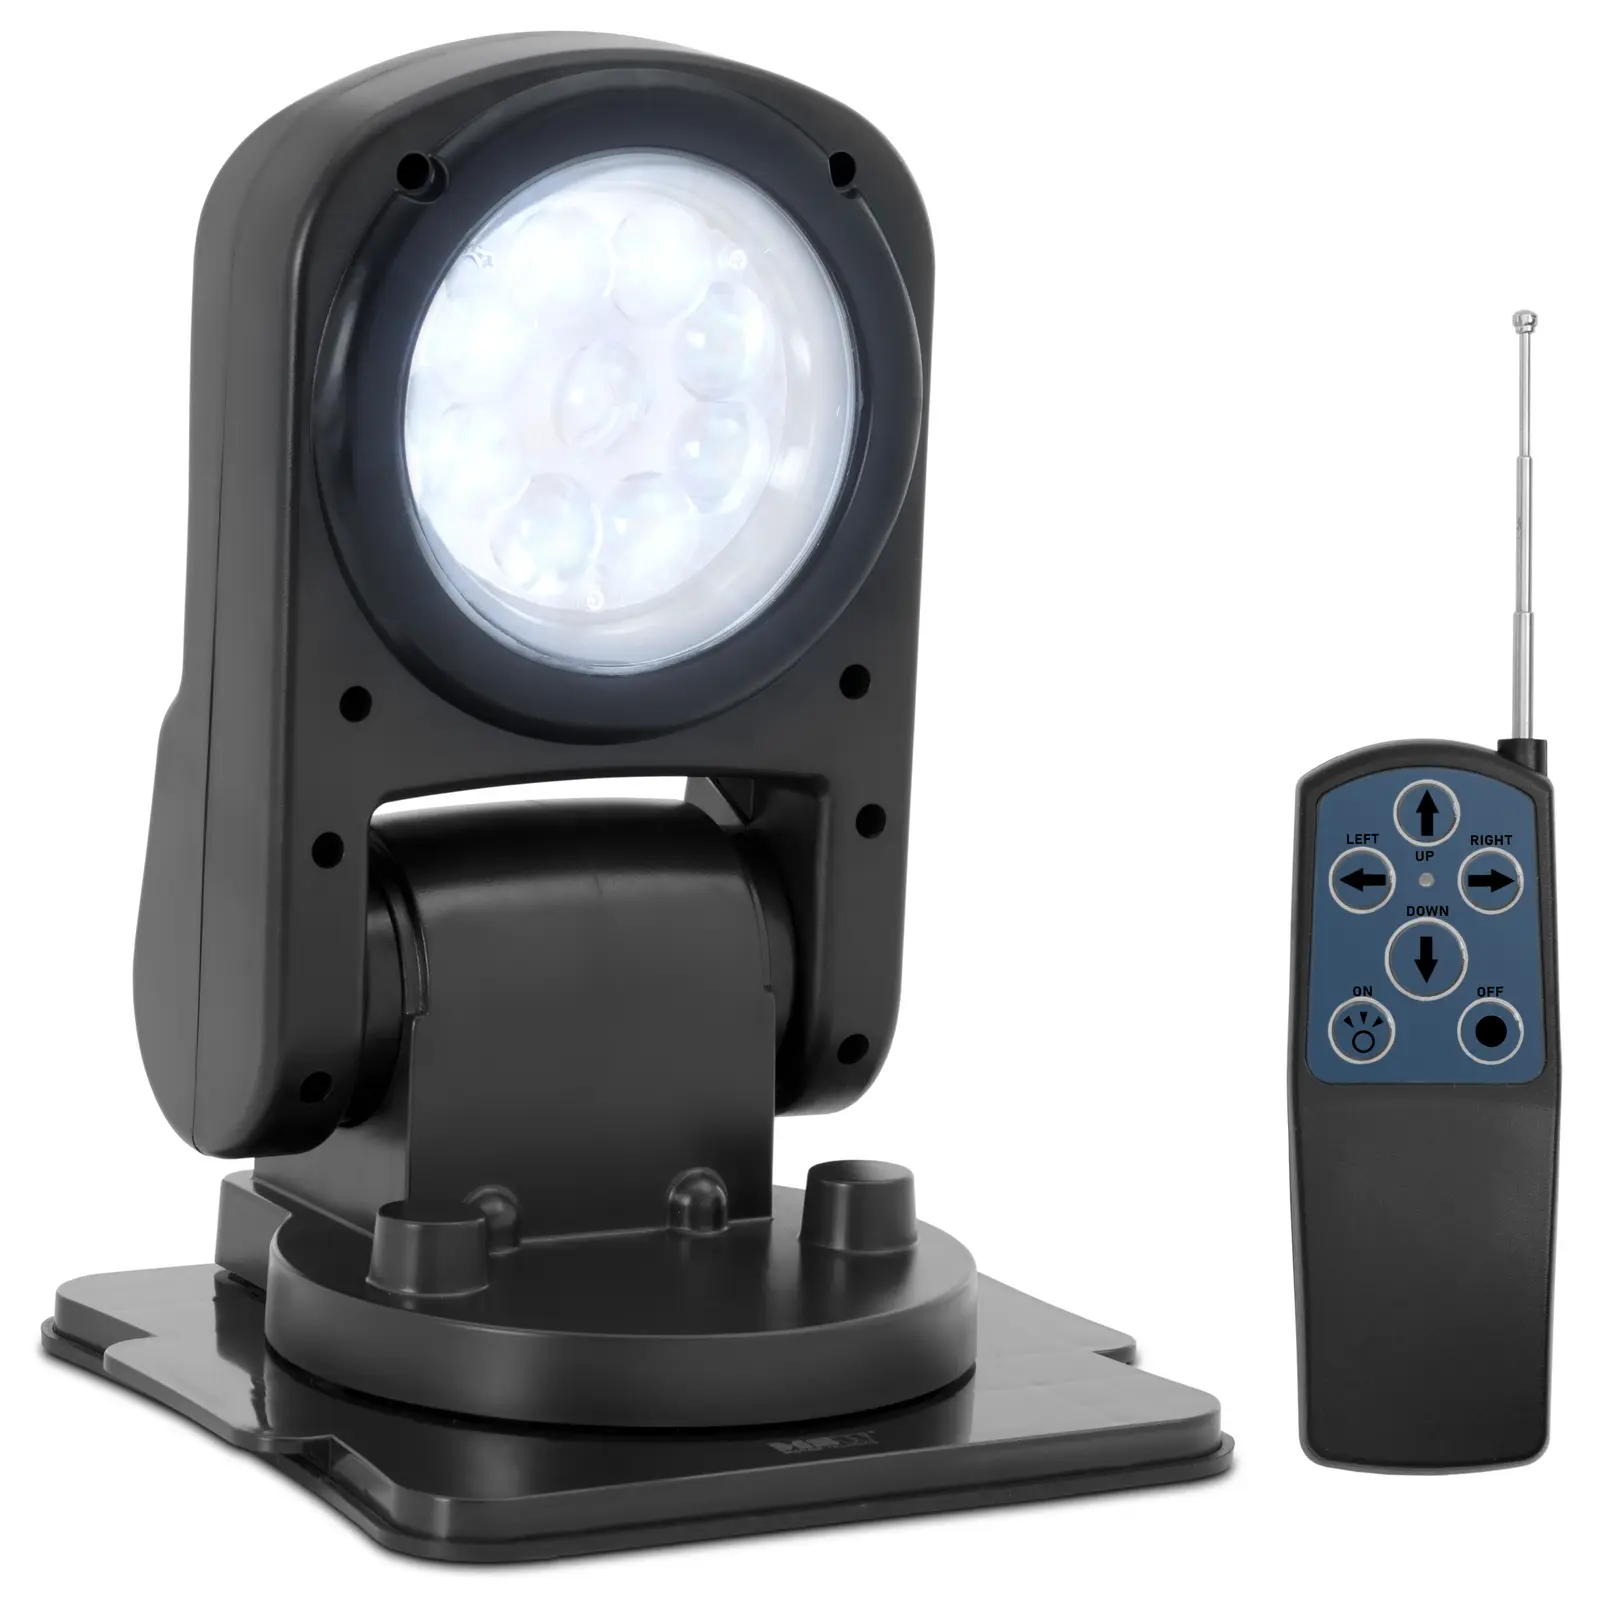 Faro LED - 9 - 32 V - 45 W - Girevole a 360° - Inclinabile a 180°- Con telecomando